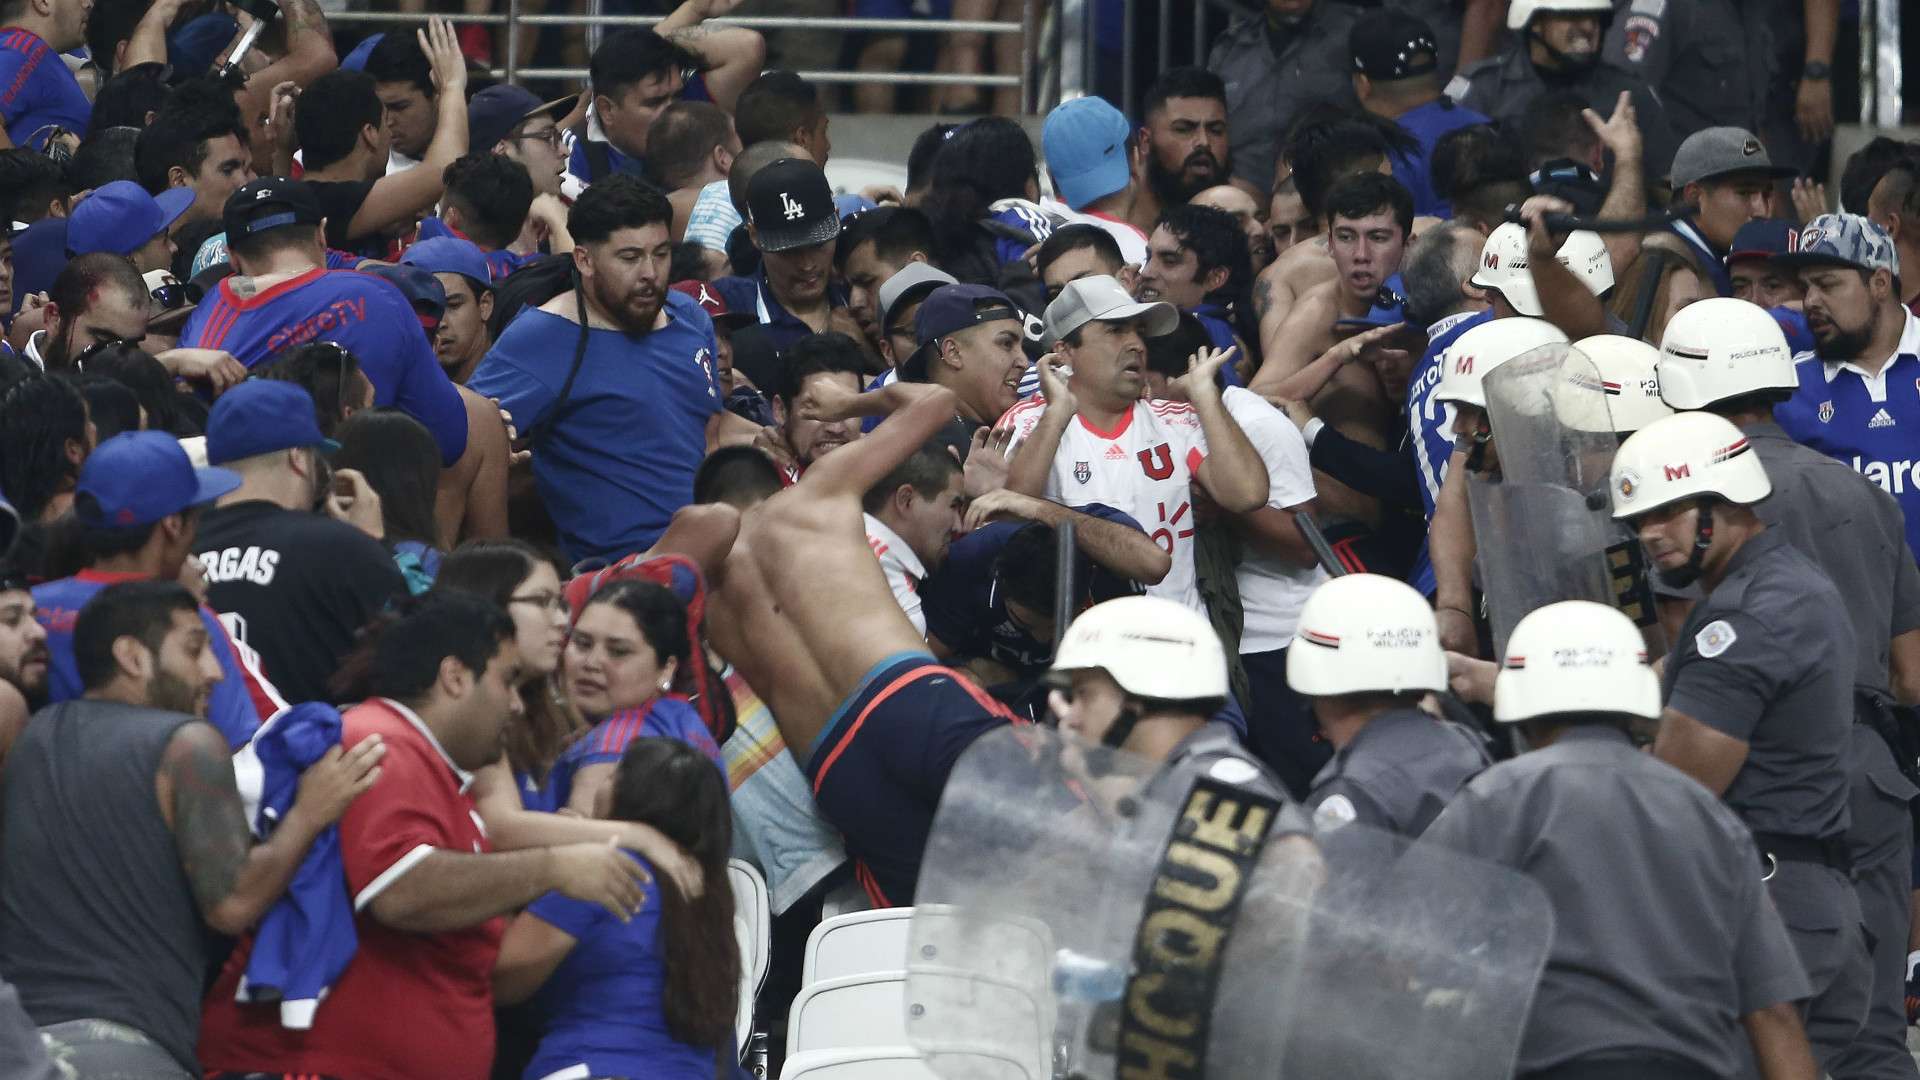 Incidentes hinchas chilenos y policia Corinthians Universidad de Chile Copa Sudamericana 05042017